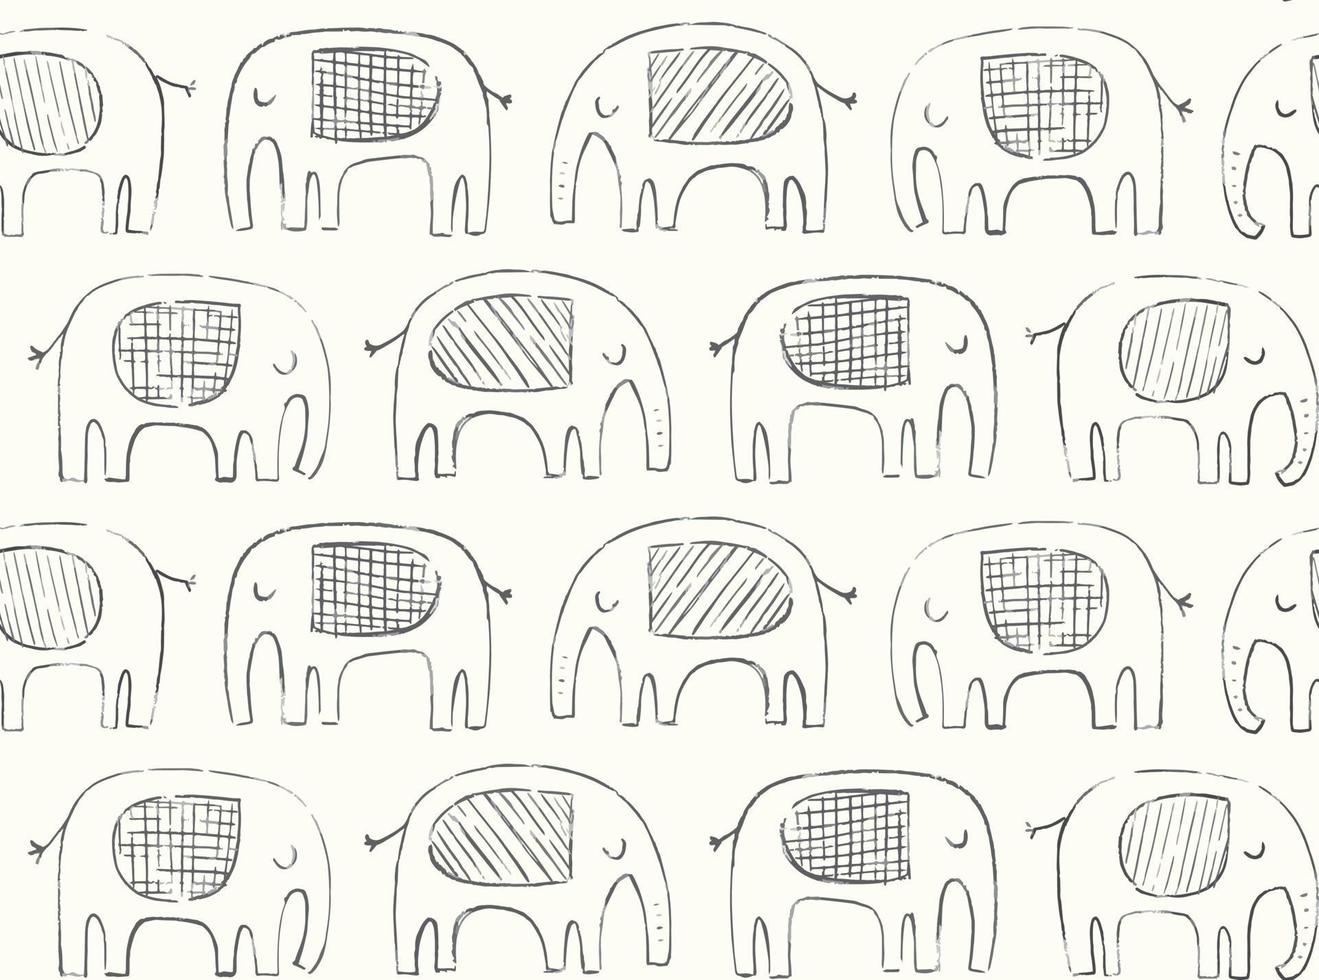 handgezeichnetes elefantenmuster. Doodle Elefant Silhouette Strichzeichnung. Vektor nahtloser Hintergrund in Schwarz und Elfenbein.